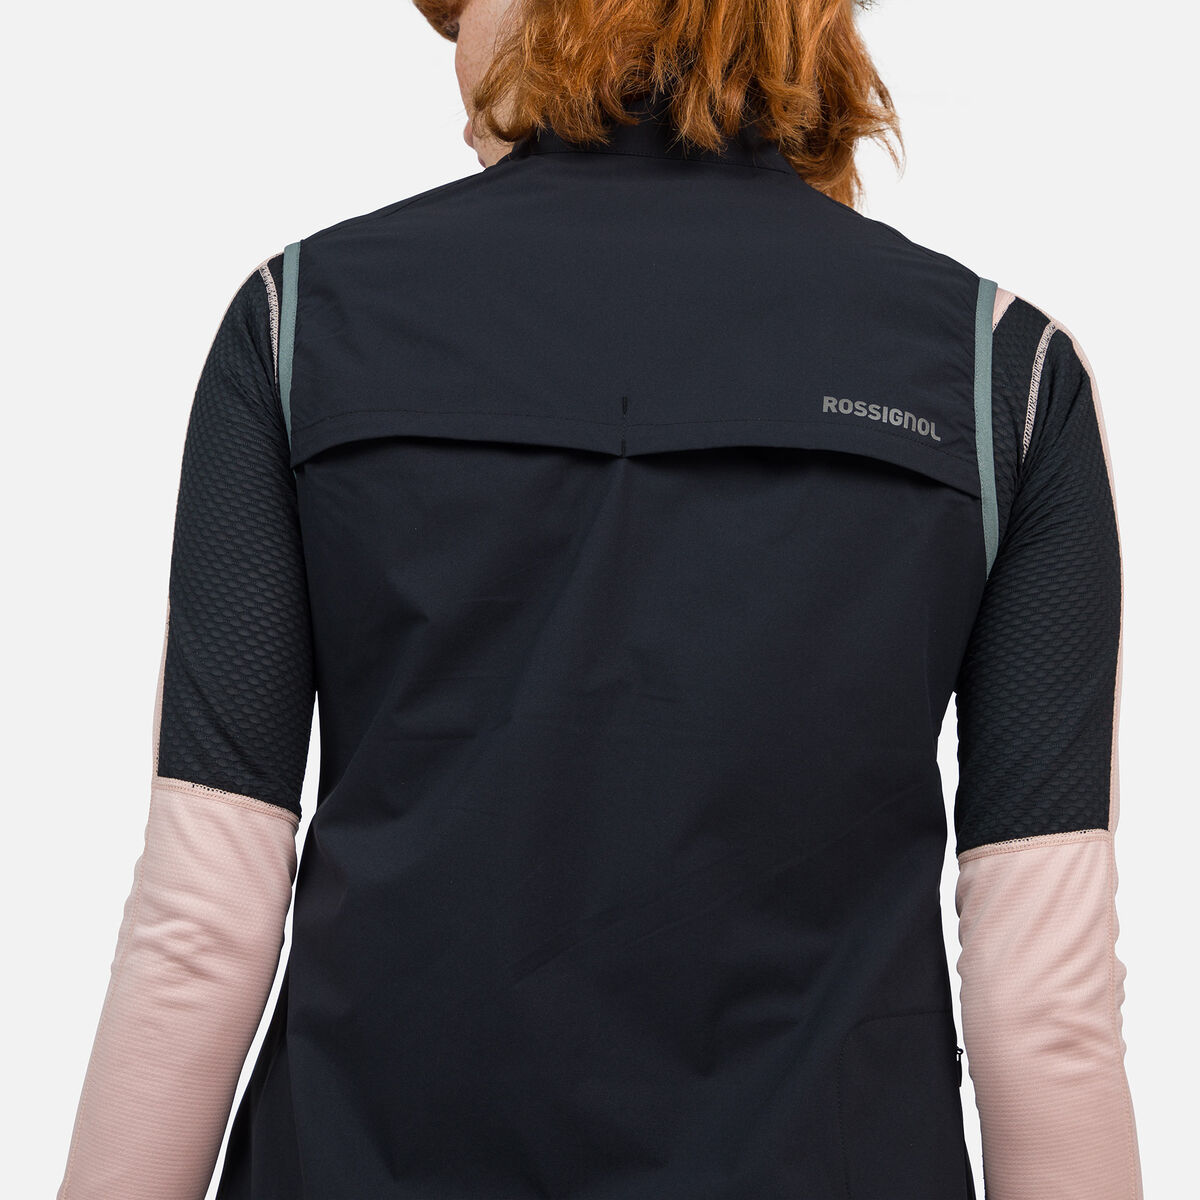 Rossignol Women's Active Versatile XC Ski Vest black